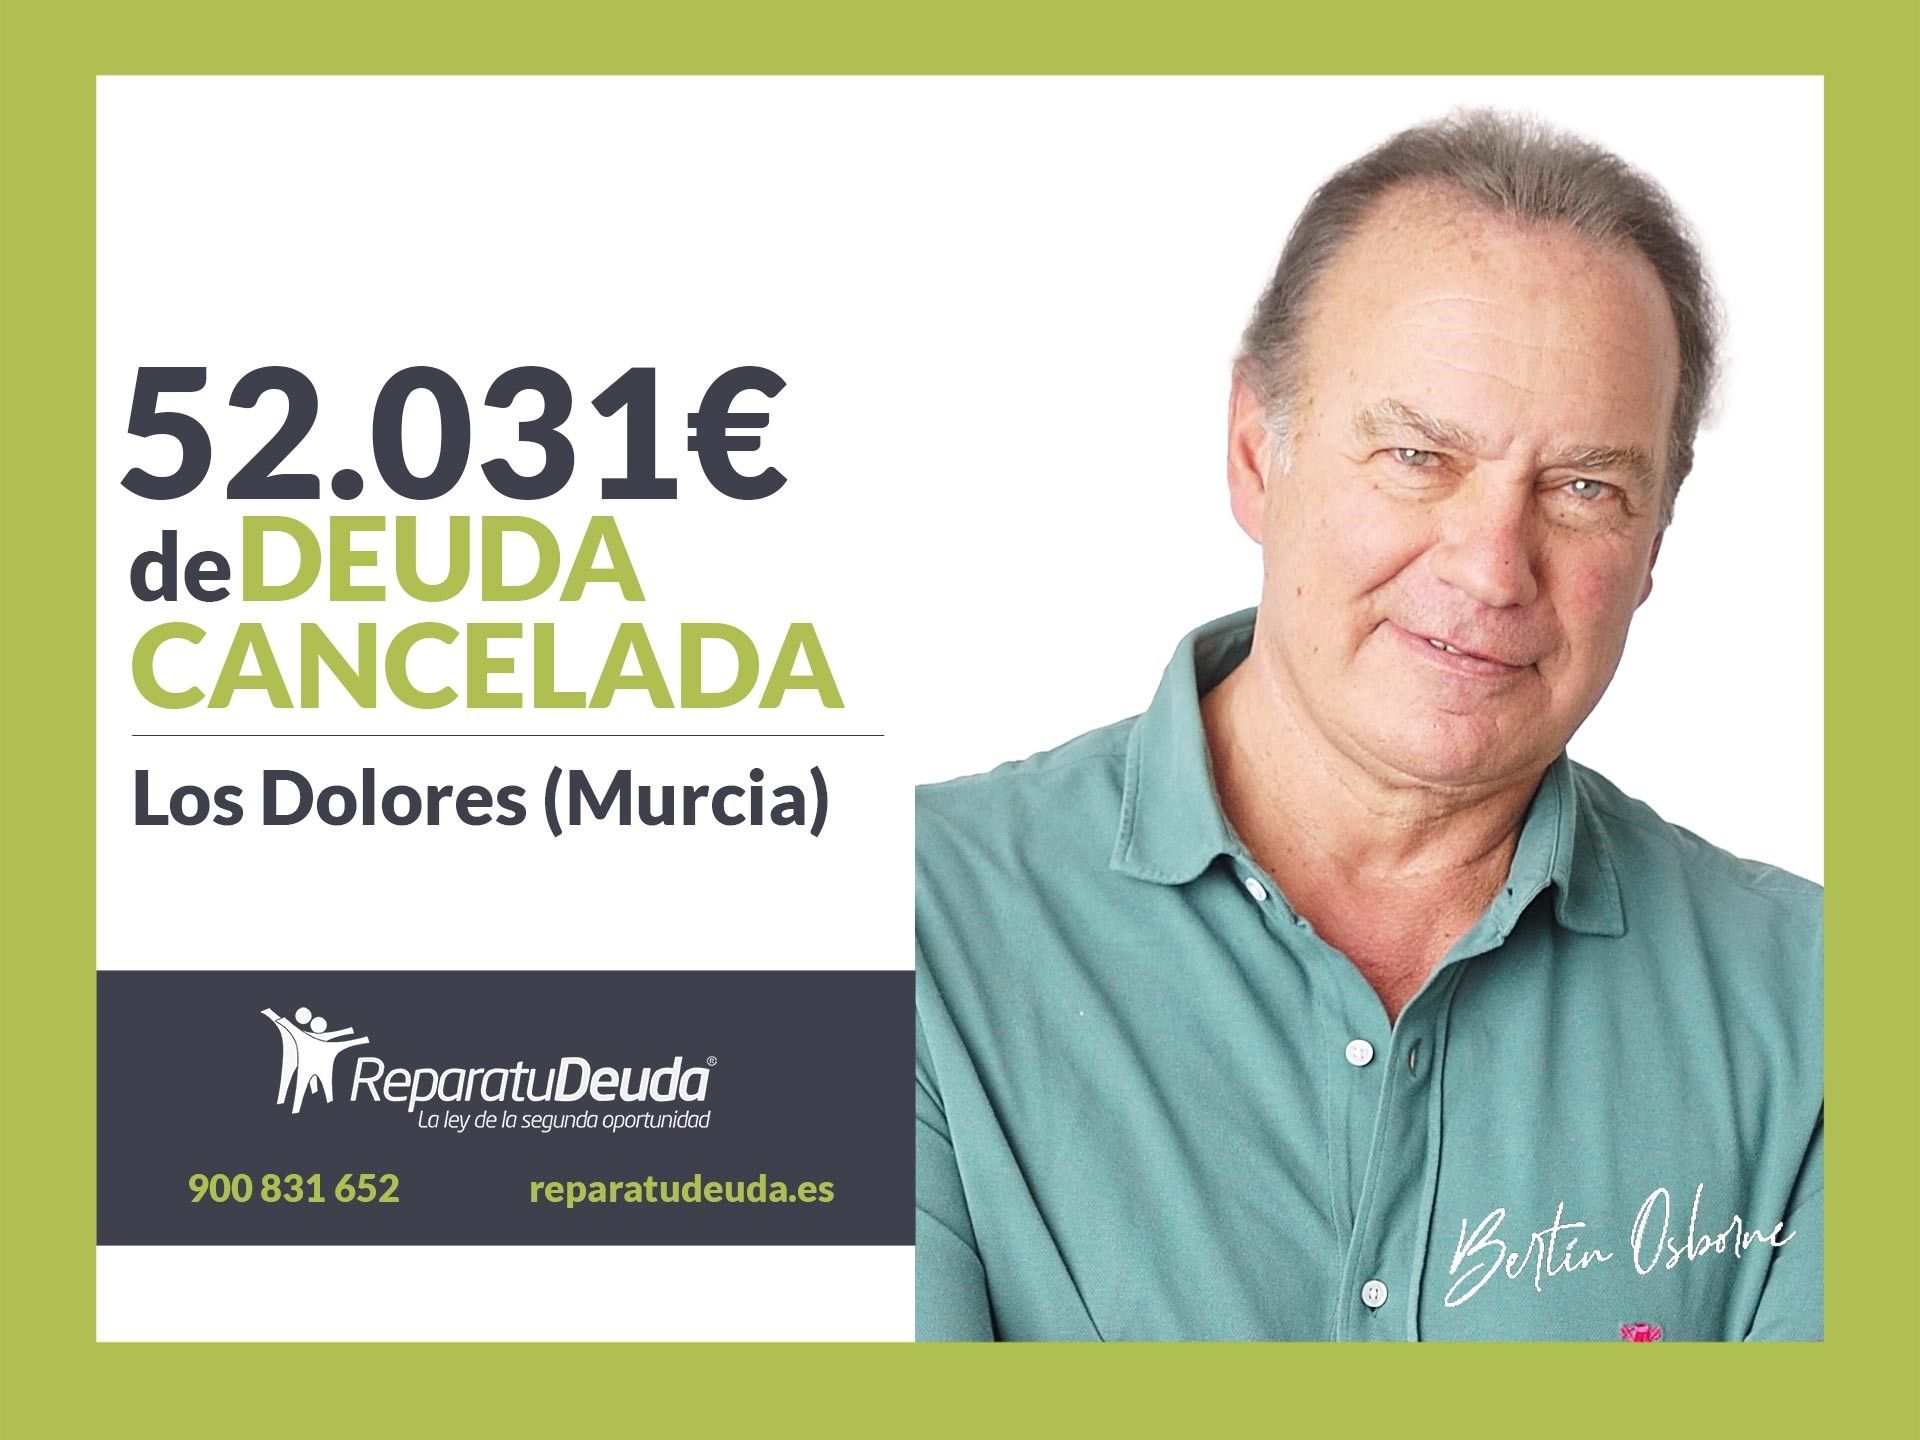 Repara tu Deuda Abogados cancela 52.031 ? en Los Dolores (Murcia) con la Ley de Segunda Oportunidad